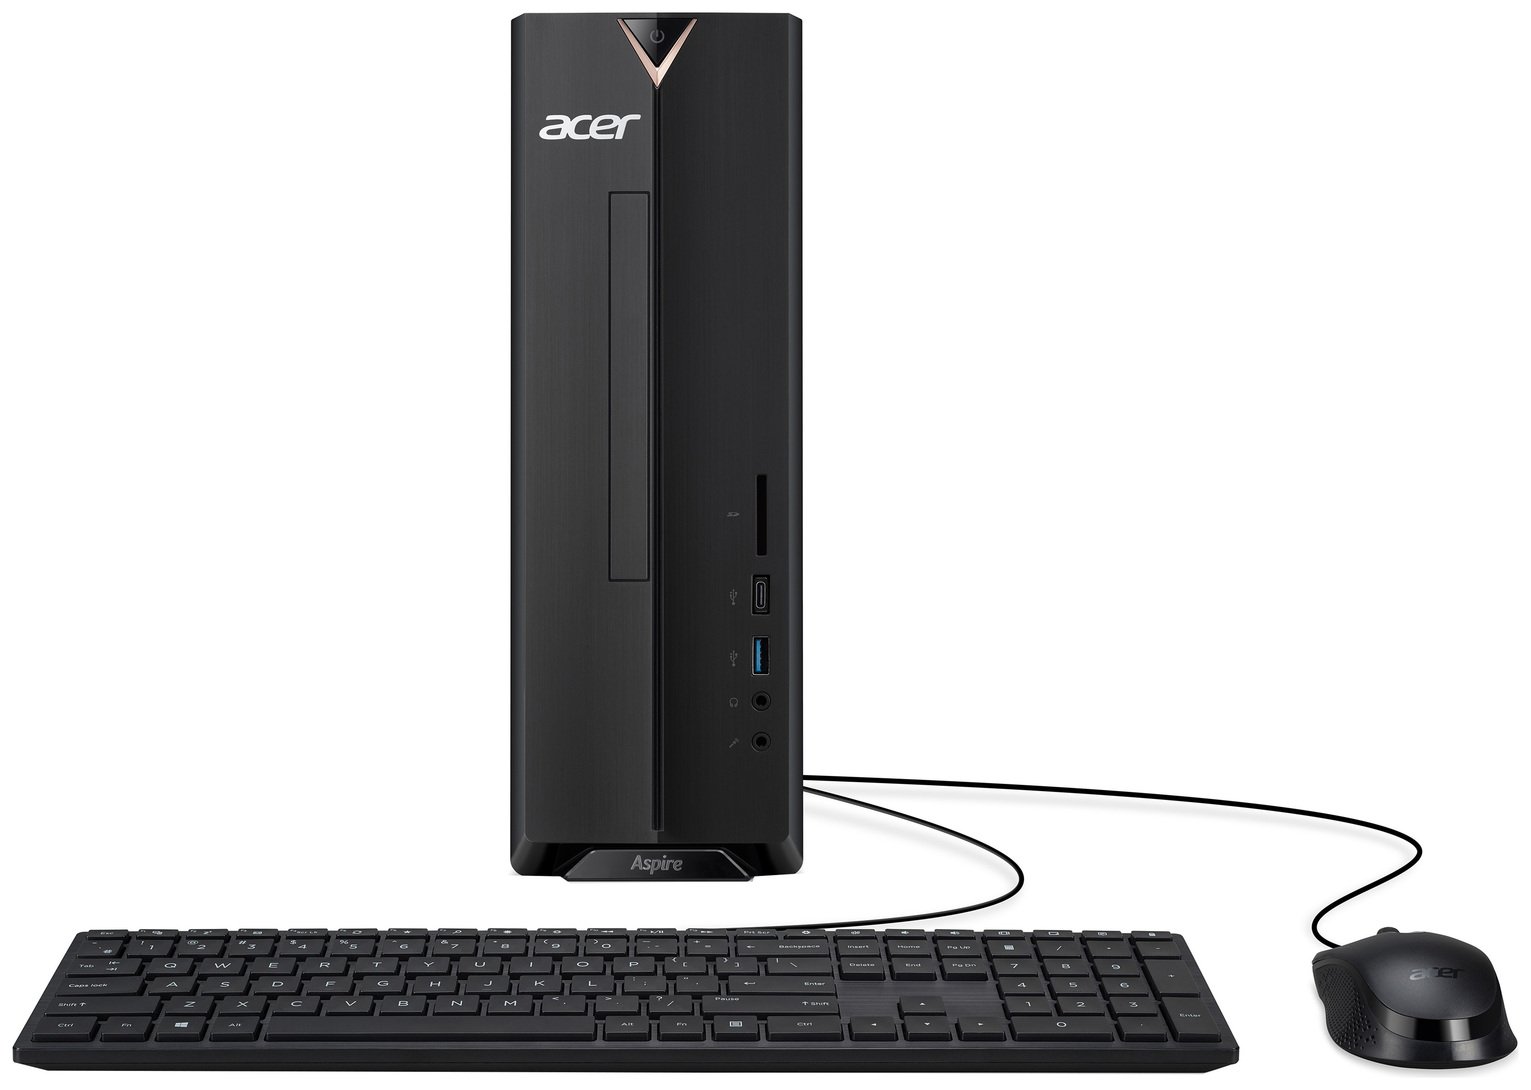 Acer Aspire XC-840 Pentium Silver 8GB 256GB Desktop PC